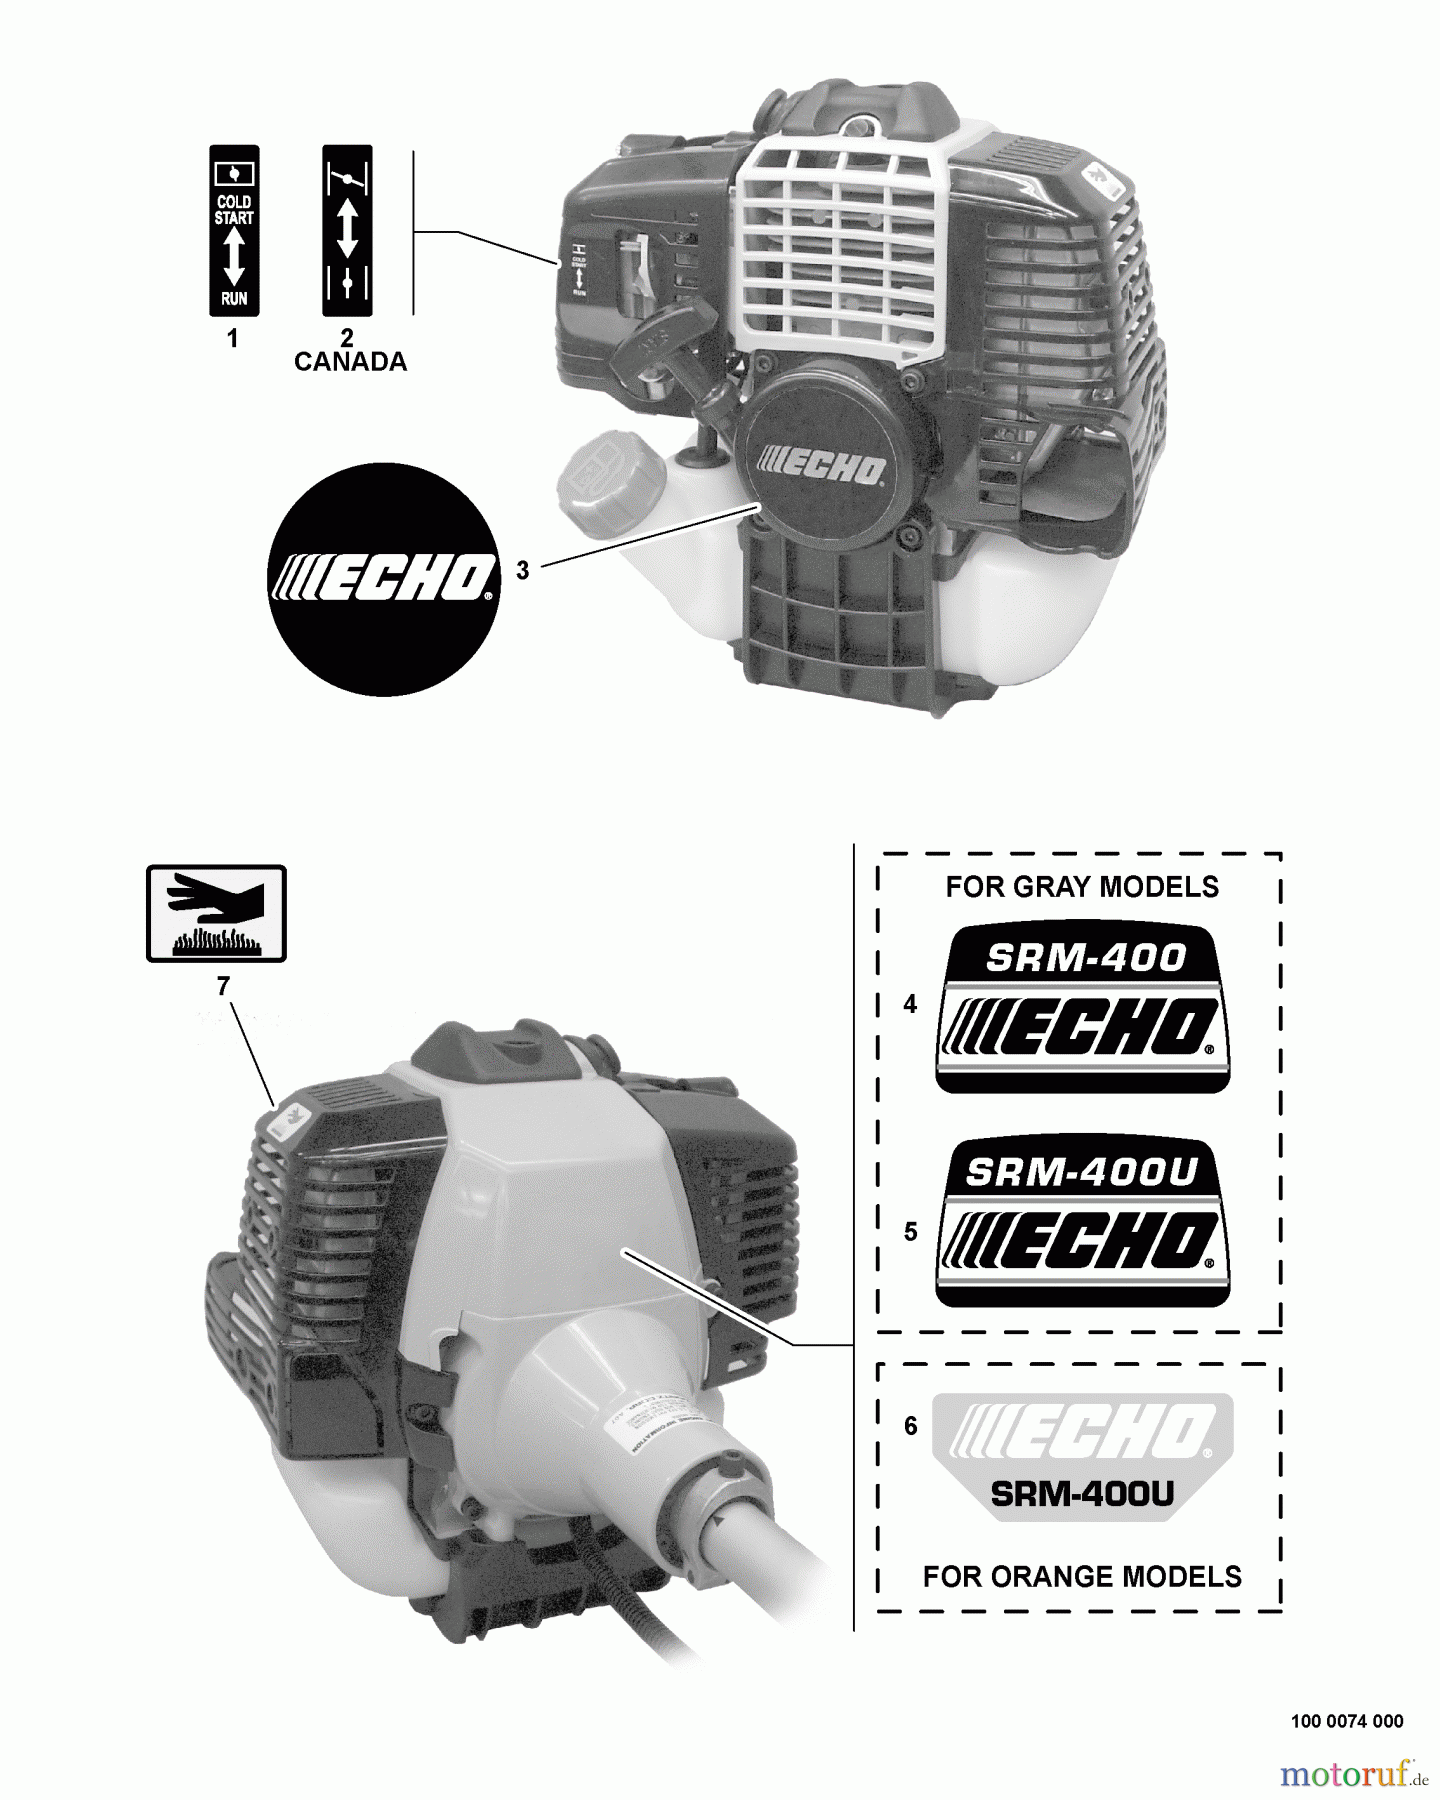  Echo Trimmer, Faden / Bürste SRM-400U - Echo String Trimmer/Brush Cutter, S/N:03001001 - 03004773 Labels